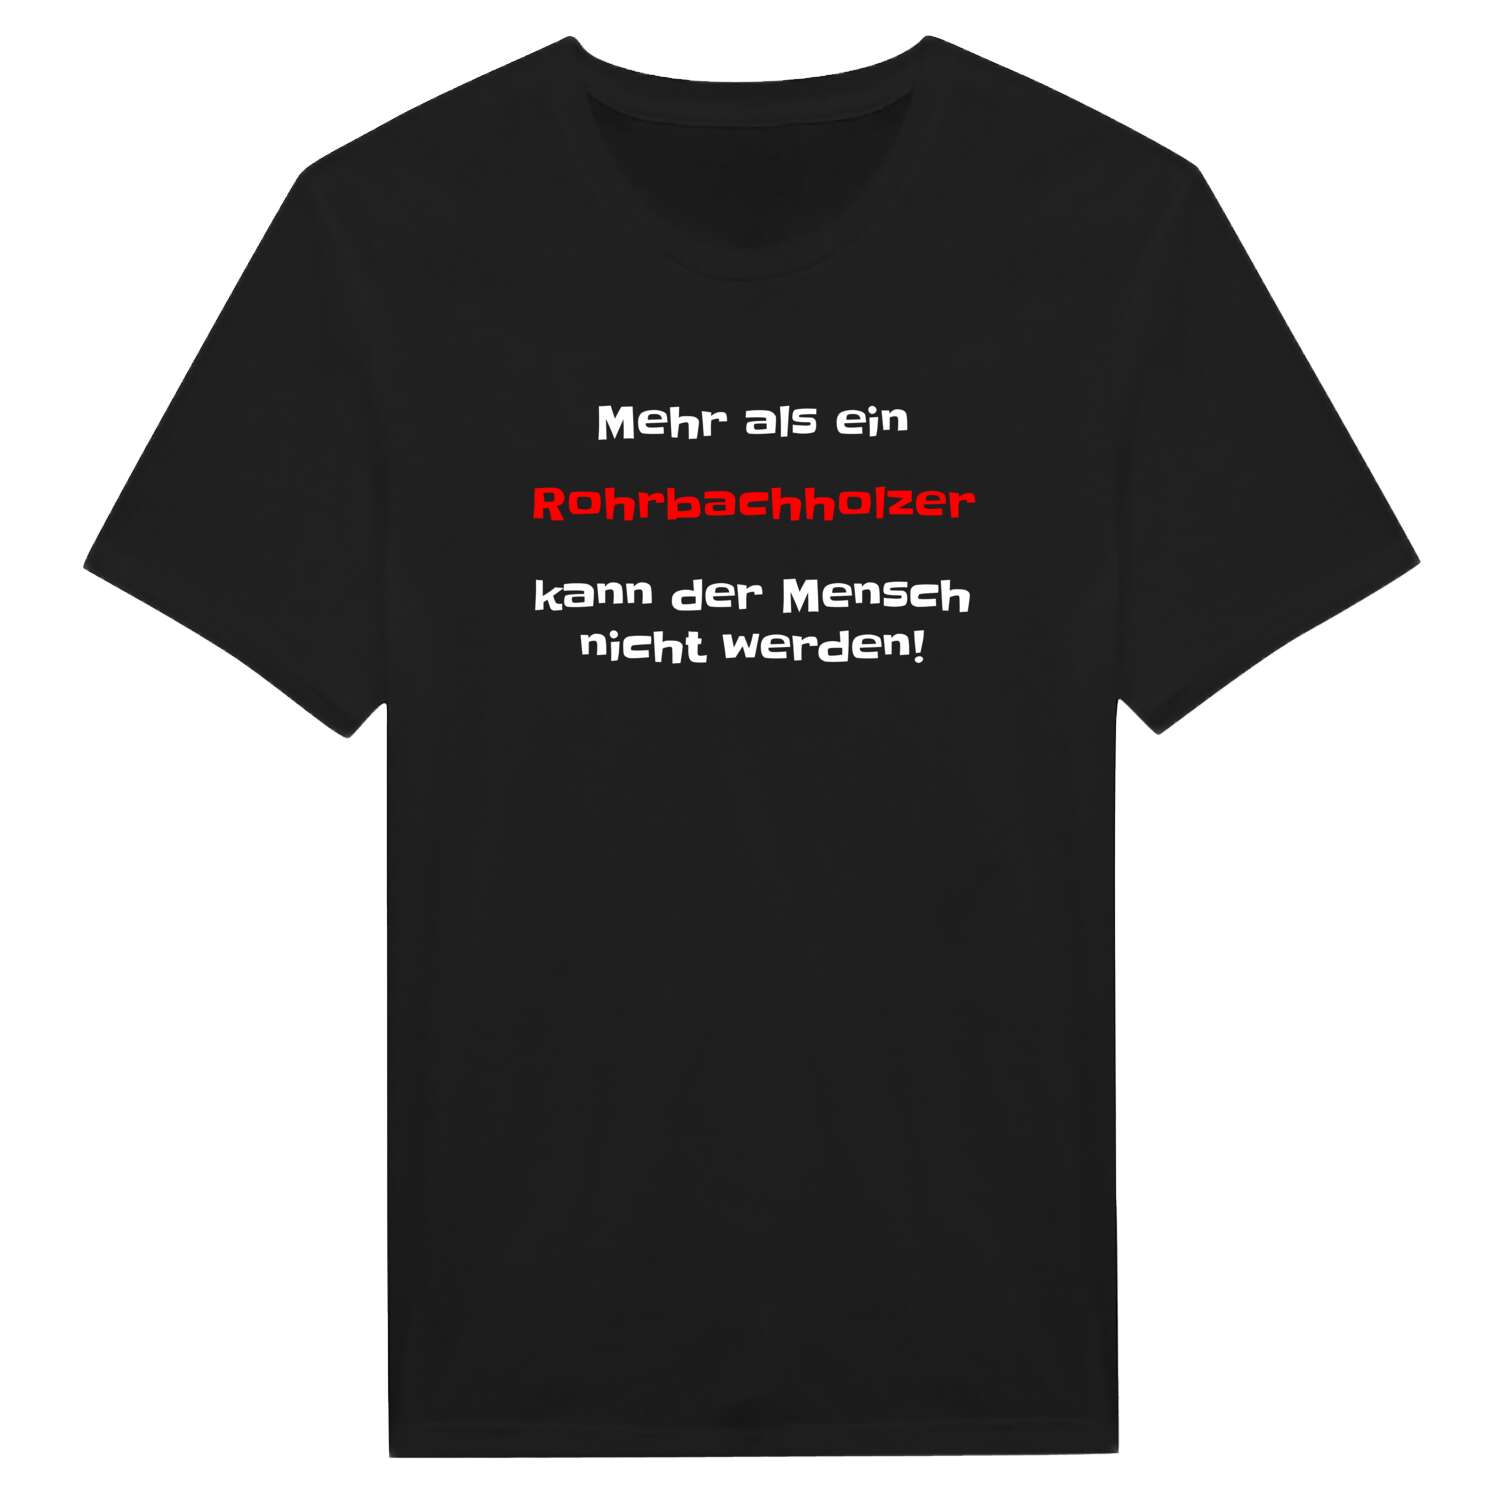 Rohrbachholz T-Shirt »Mehr als ein«